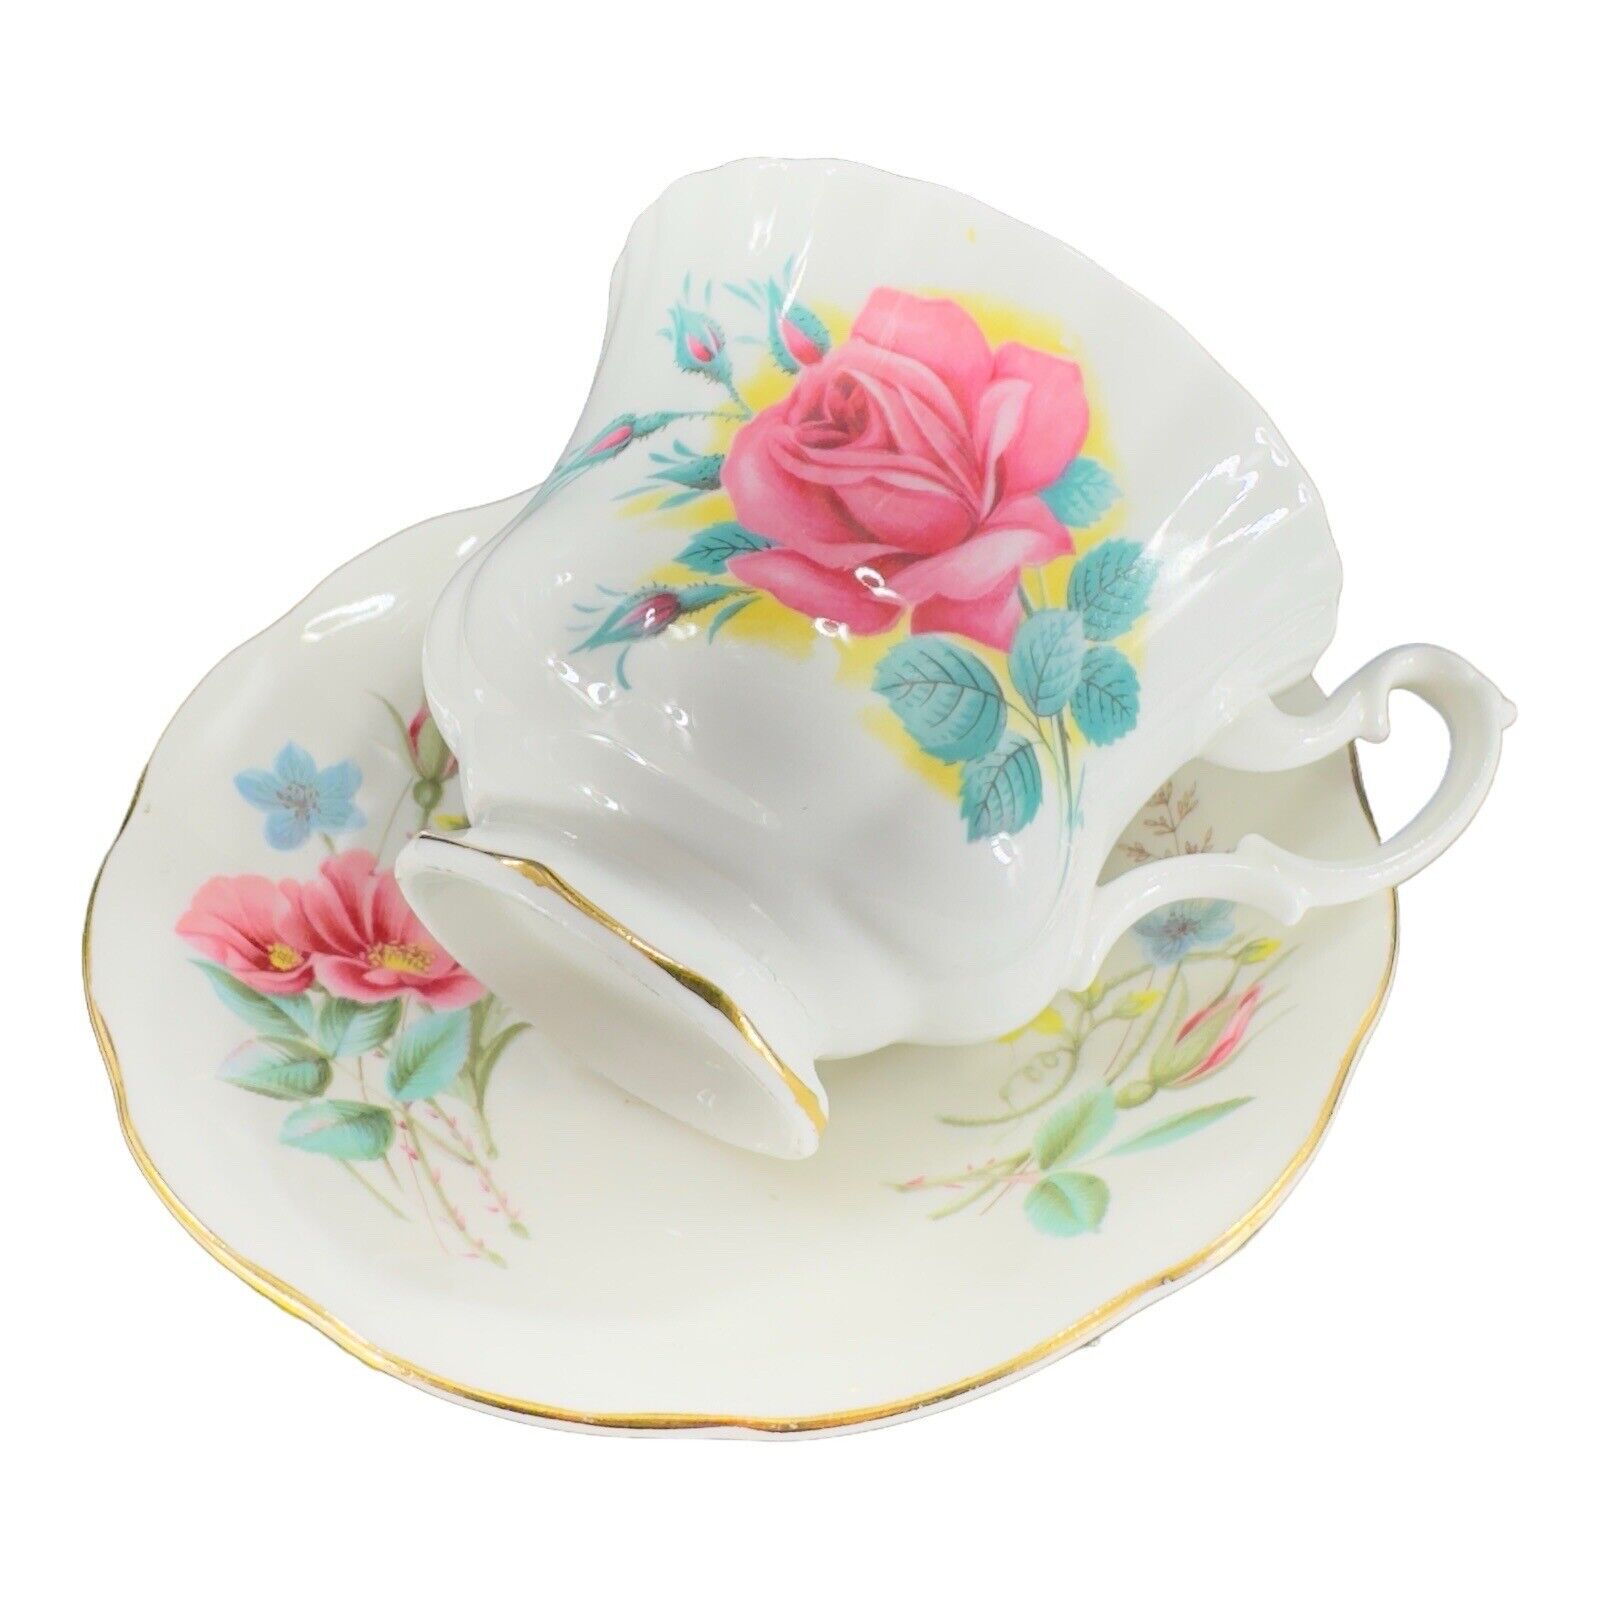 Vintage Royal Albert Fine Bone China Porcelain Teacup And Saucer Set Rose Flower